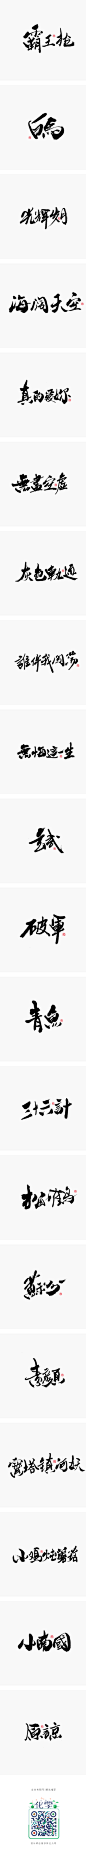 小字集-2017-《九》-字体传奇网-中国首个字体品牌设计师交流网